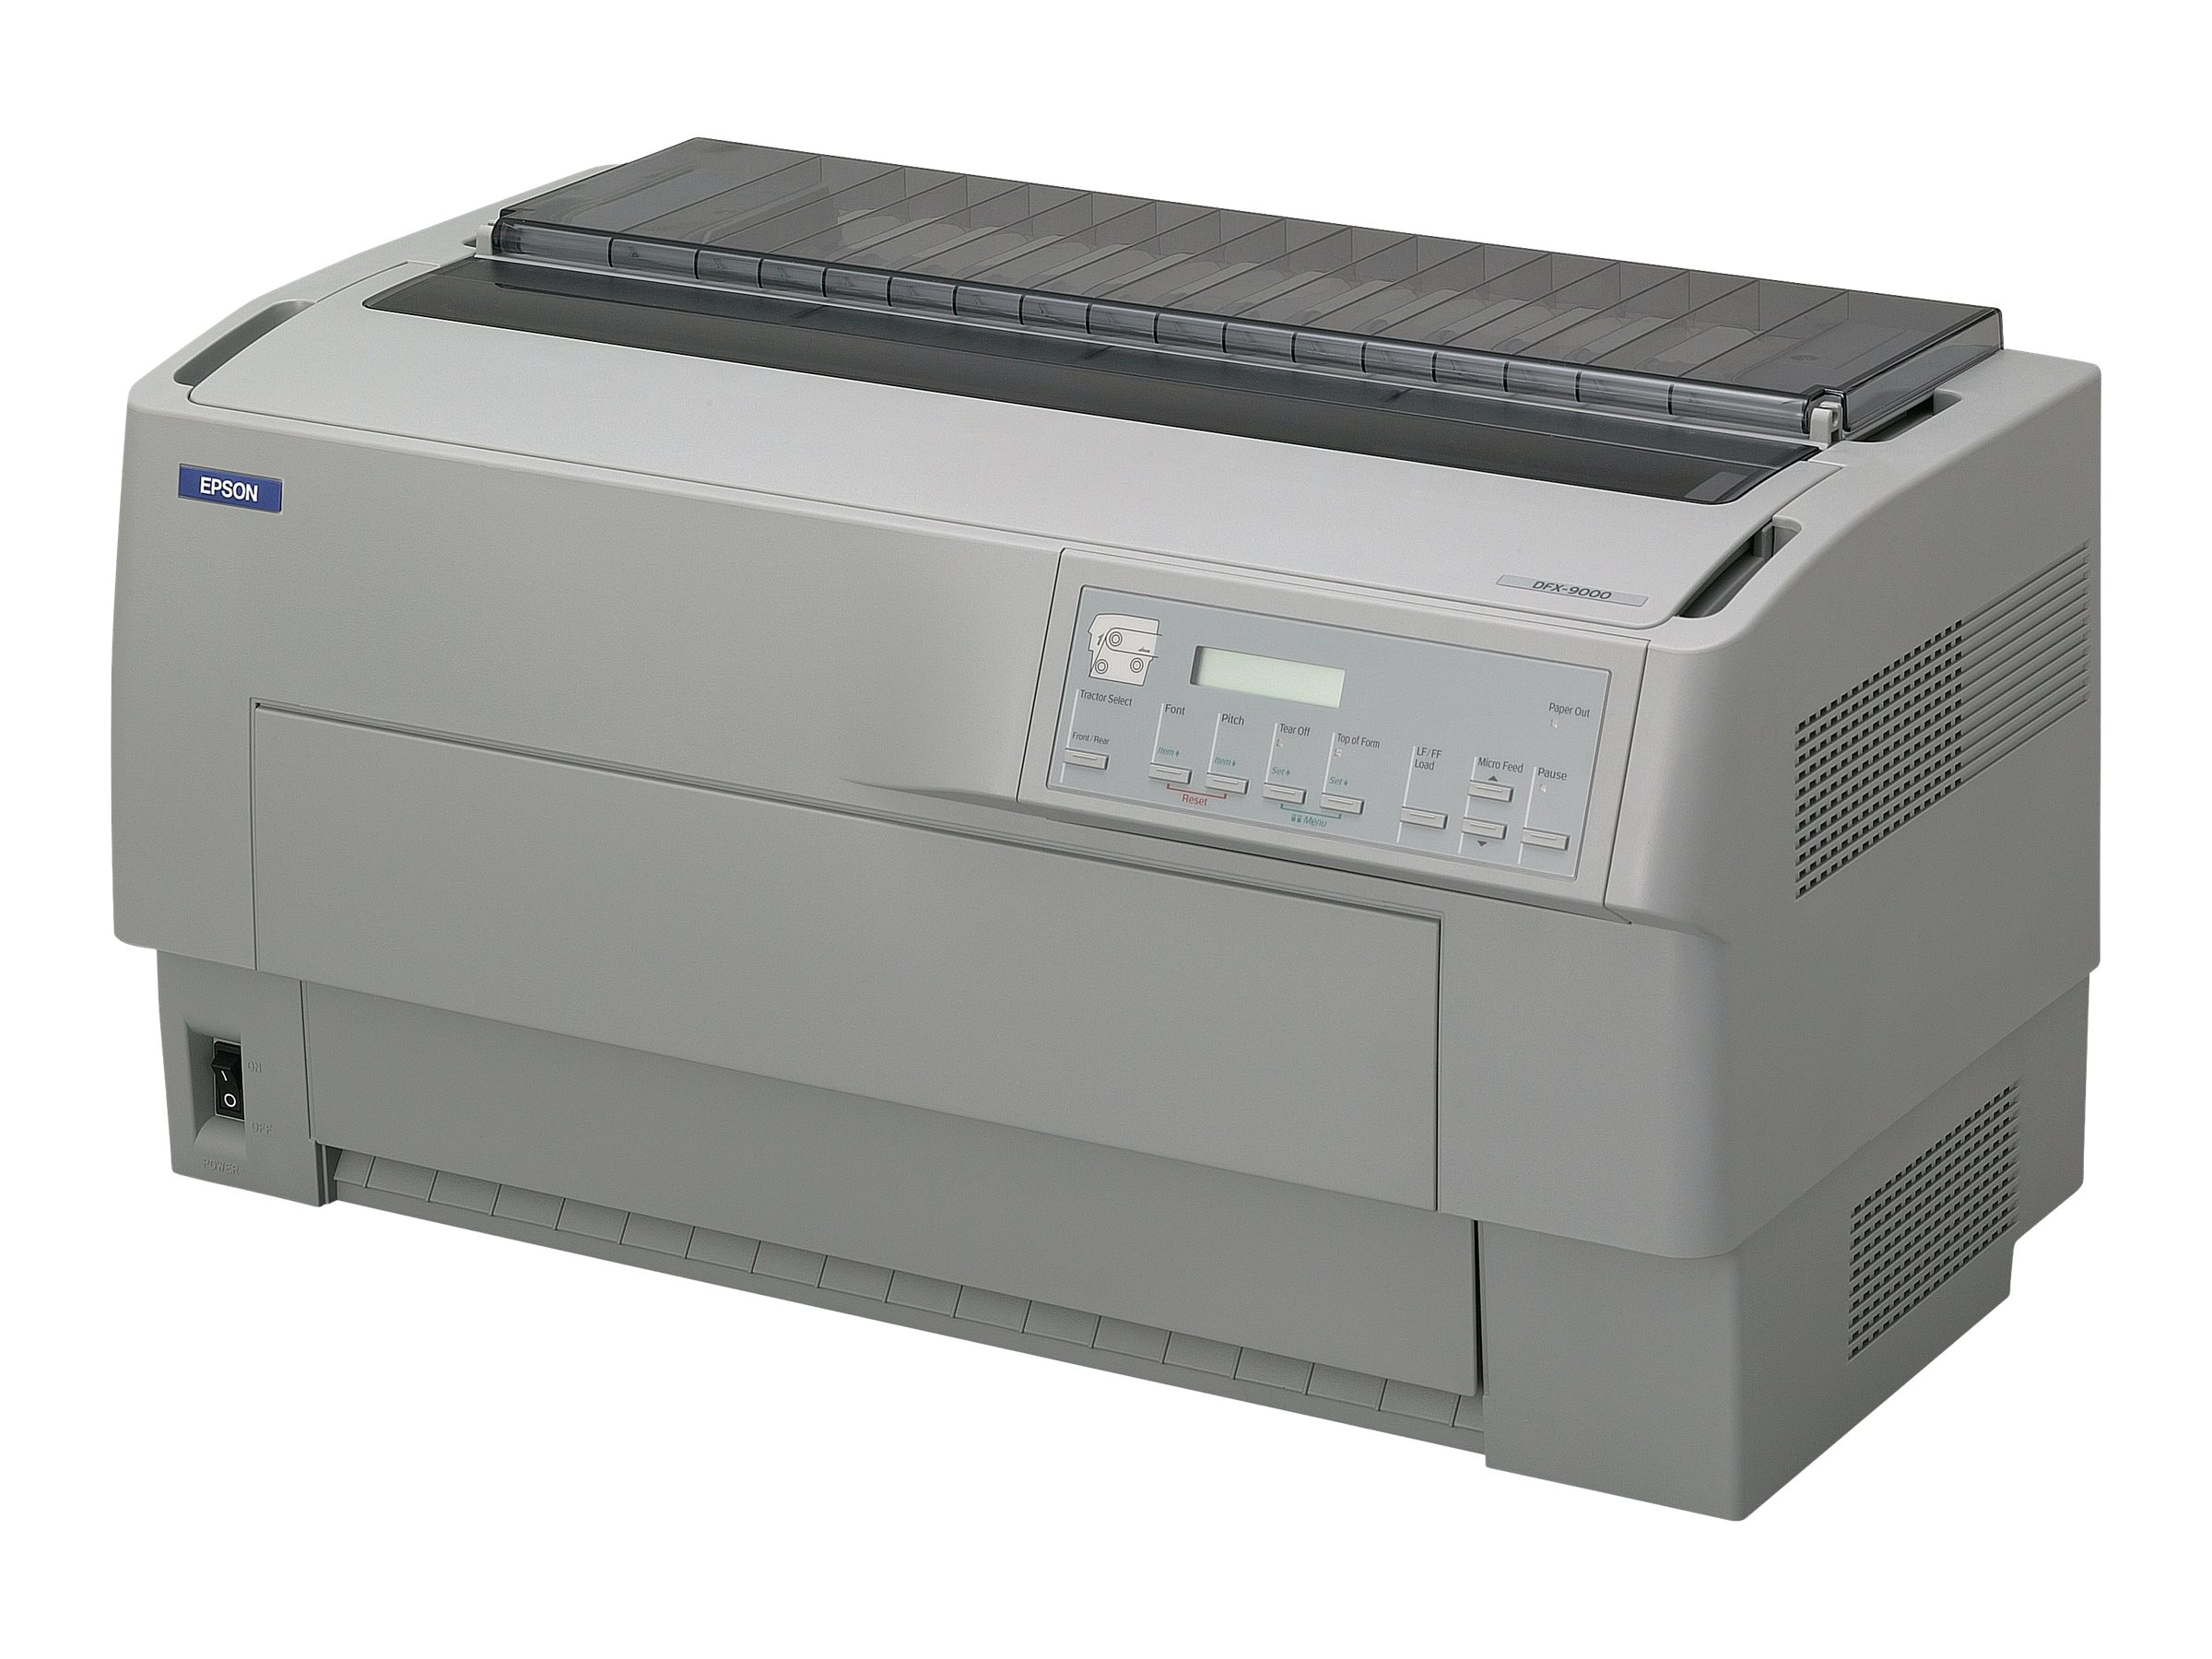 Epson DFX 9000N - Drucker - s/w - Punktmatrix - 419,1 mm (Breite) - 240 x 144 dpi